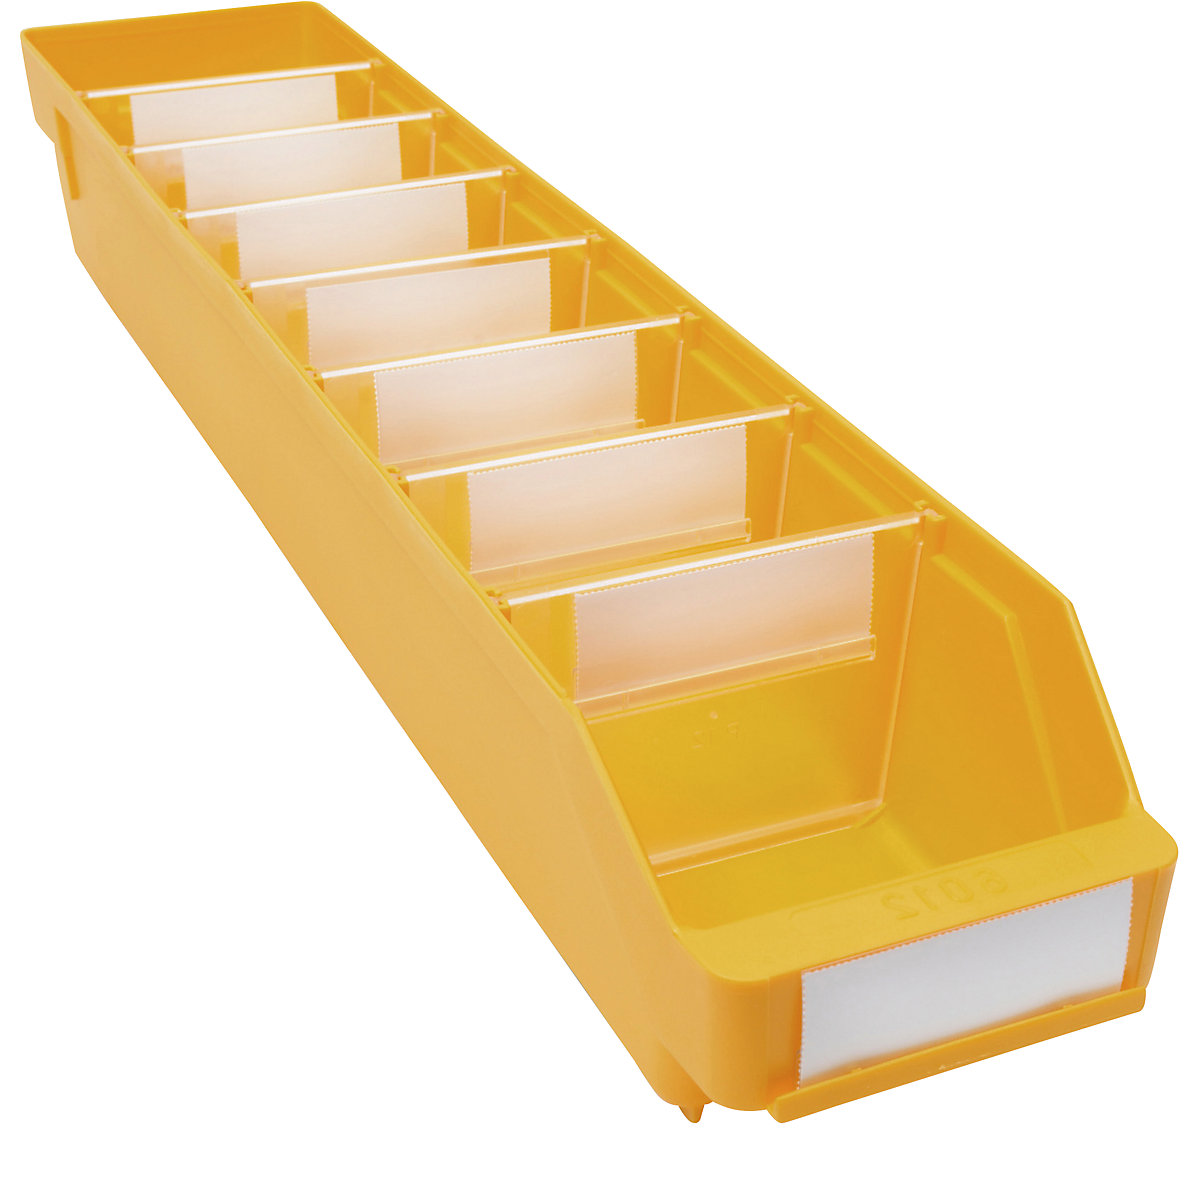 Kutija za regale od polipropilena otpornog na udarce – STEMO, u žutoj boji, DxŠxV 600 x 118 x 95 mm, pak. 30 kom.-21